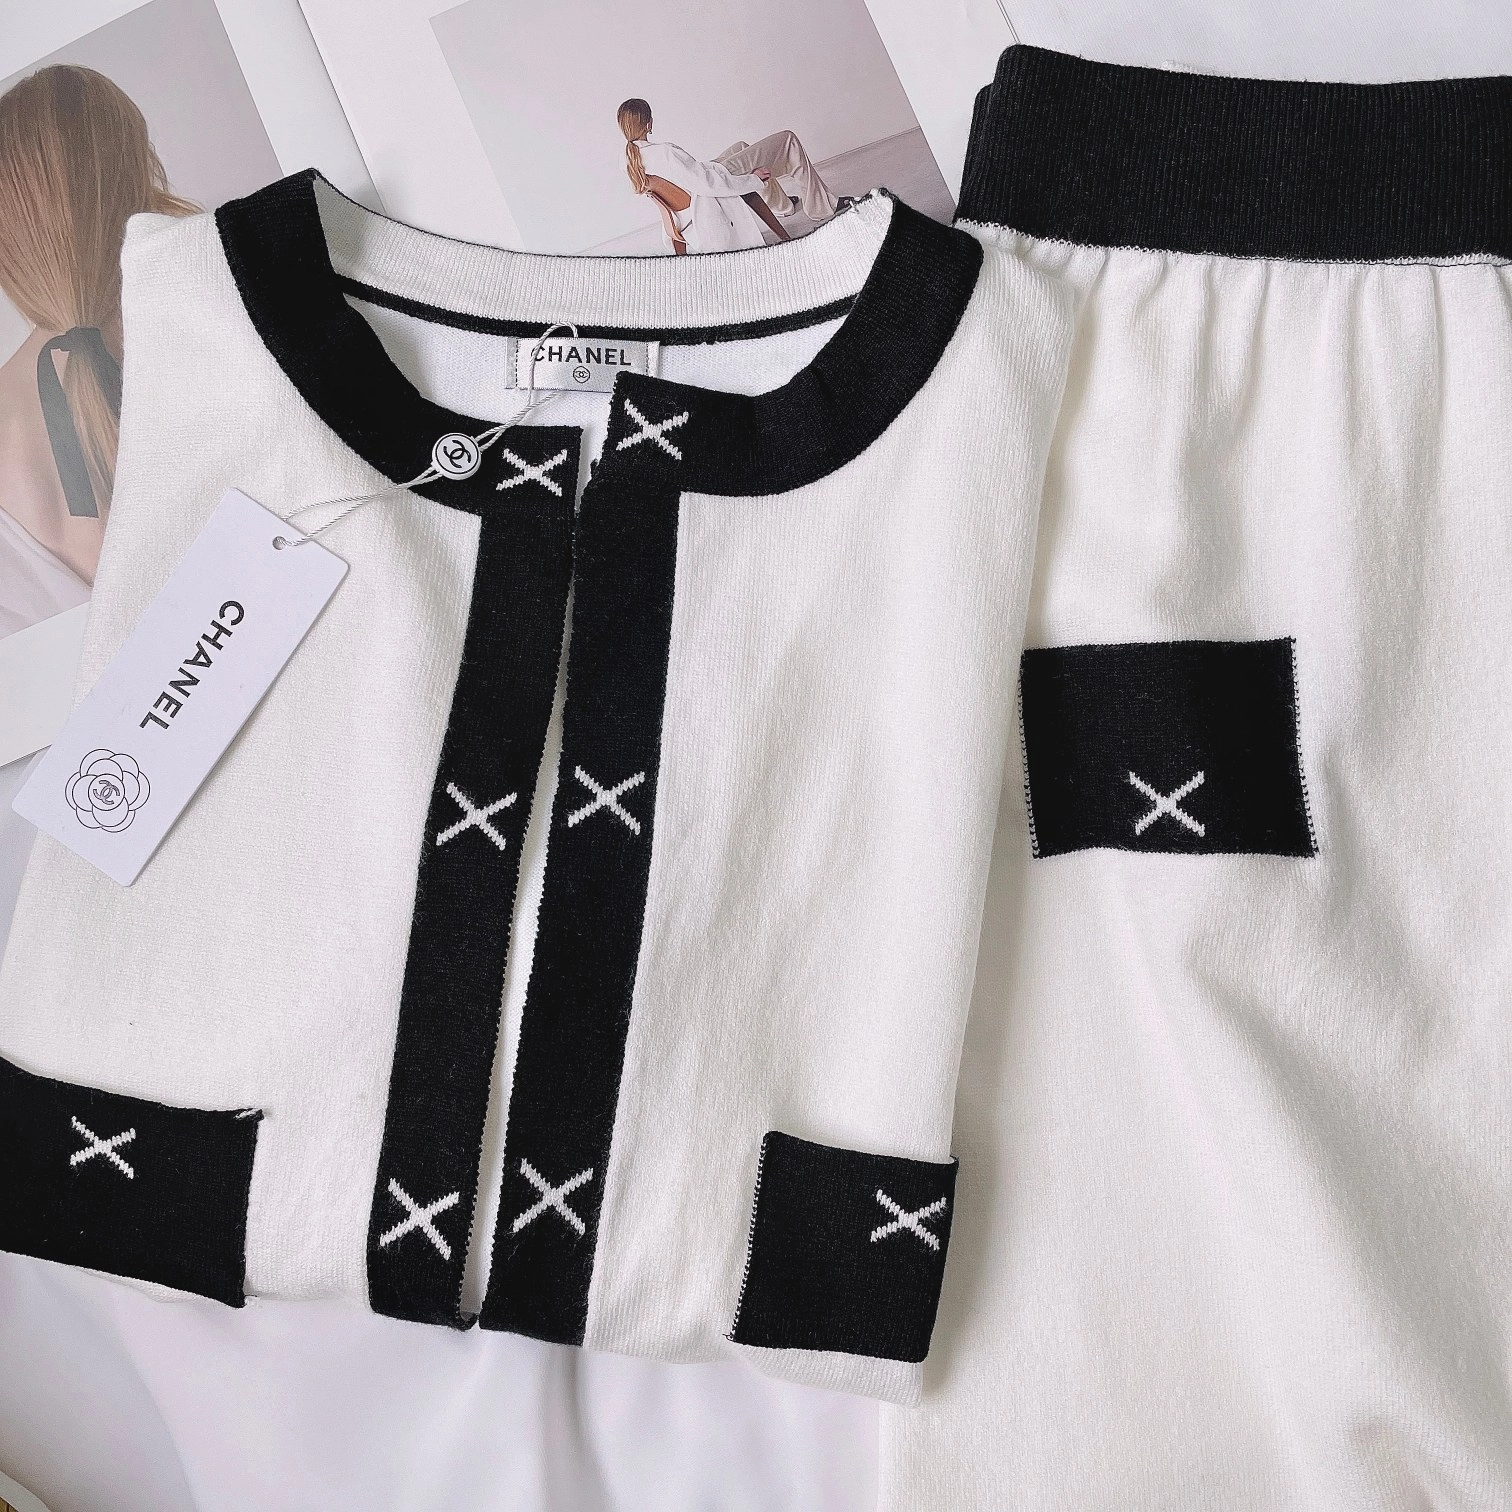 Chanel 服パンツセットカジュアル風~ | i'm Cc luckが投稿したフォト